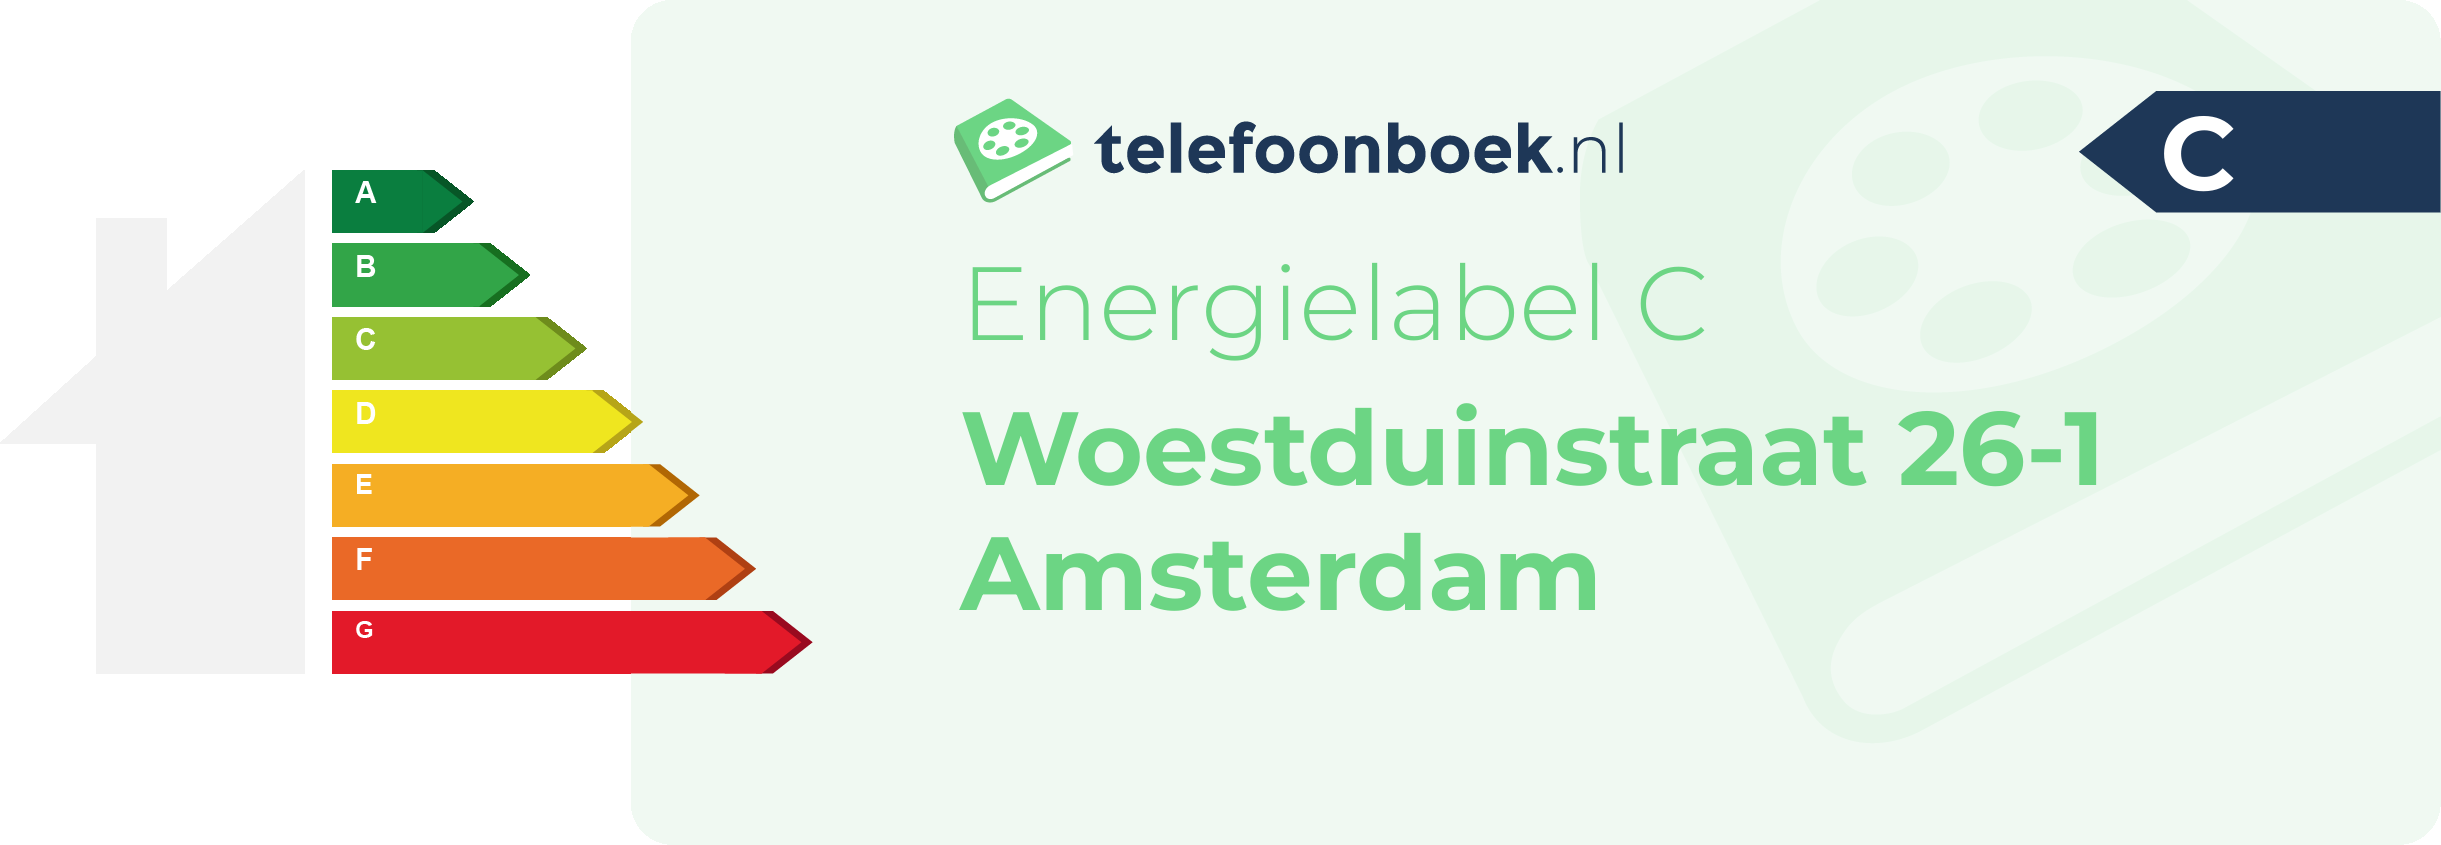 Energielabel Woestduinstraat 26-1 Amsterdam